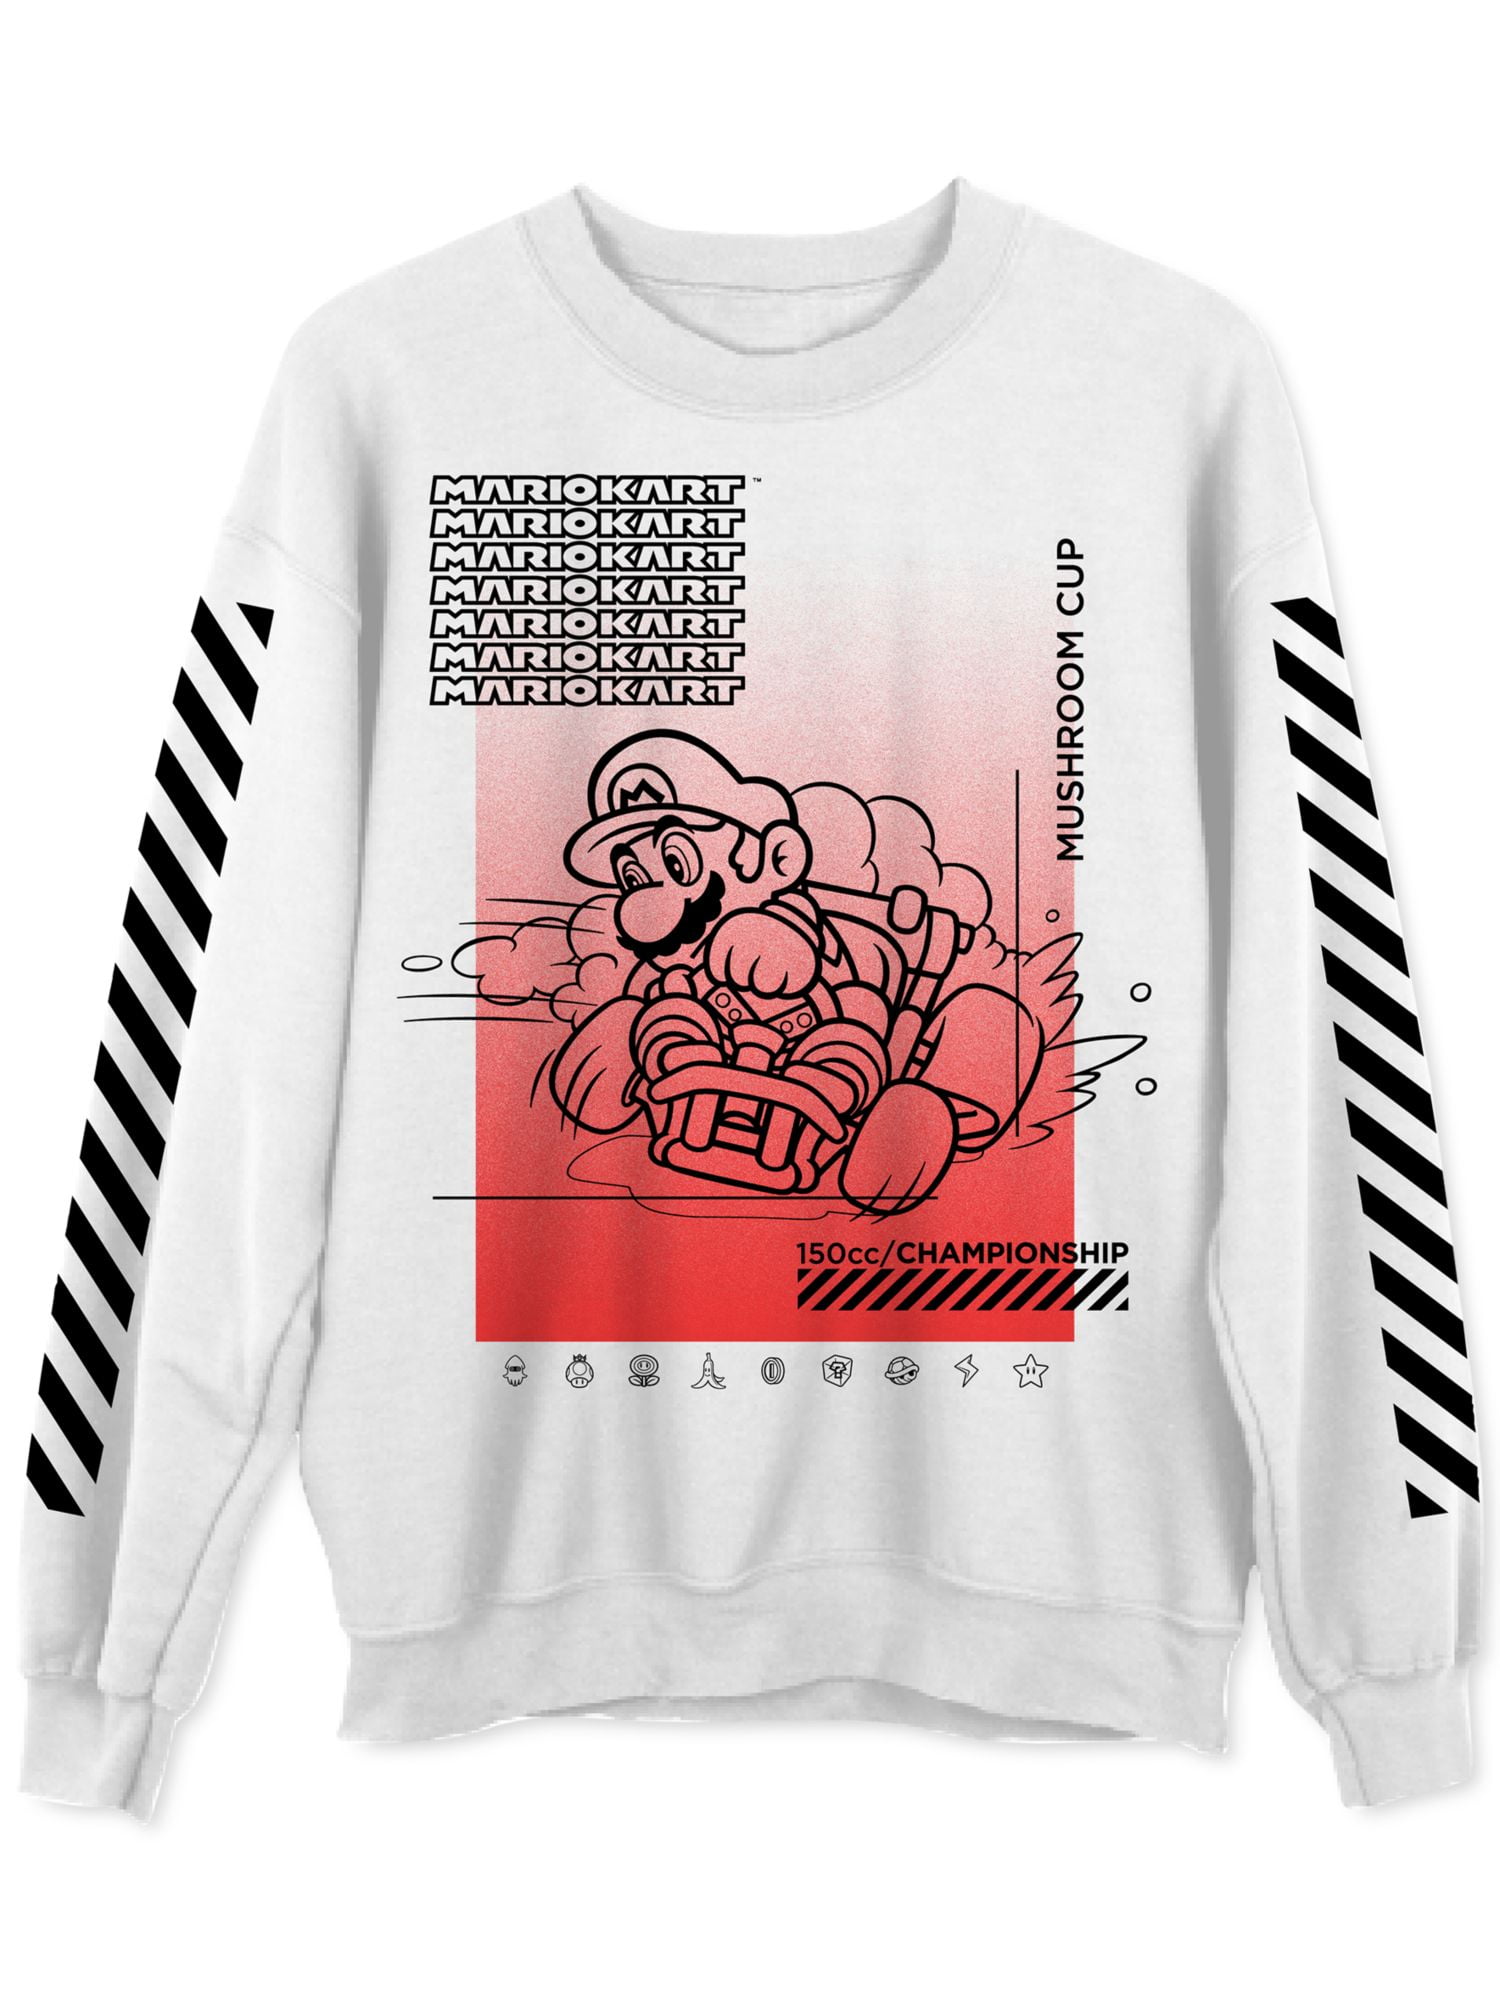 Men's Graphic Print Crew Neck Sweatshirt Red / L